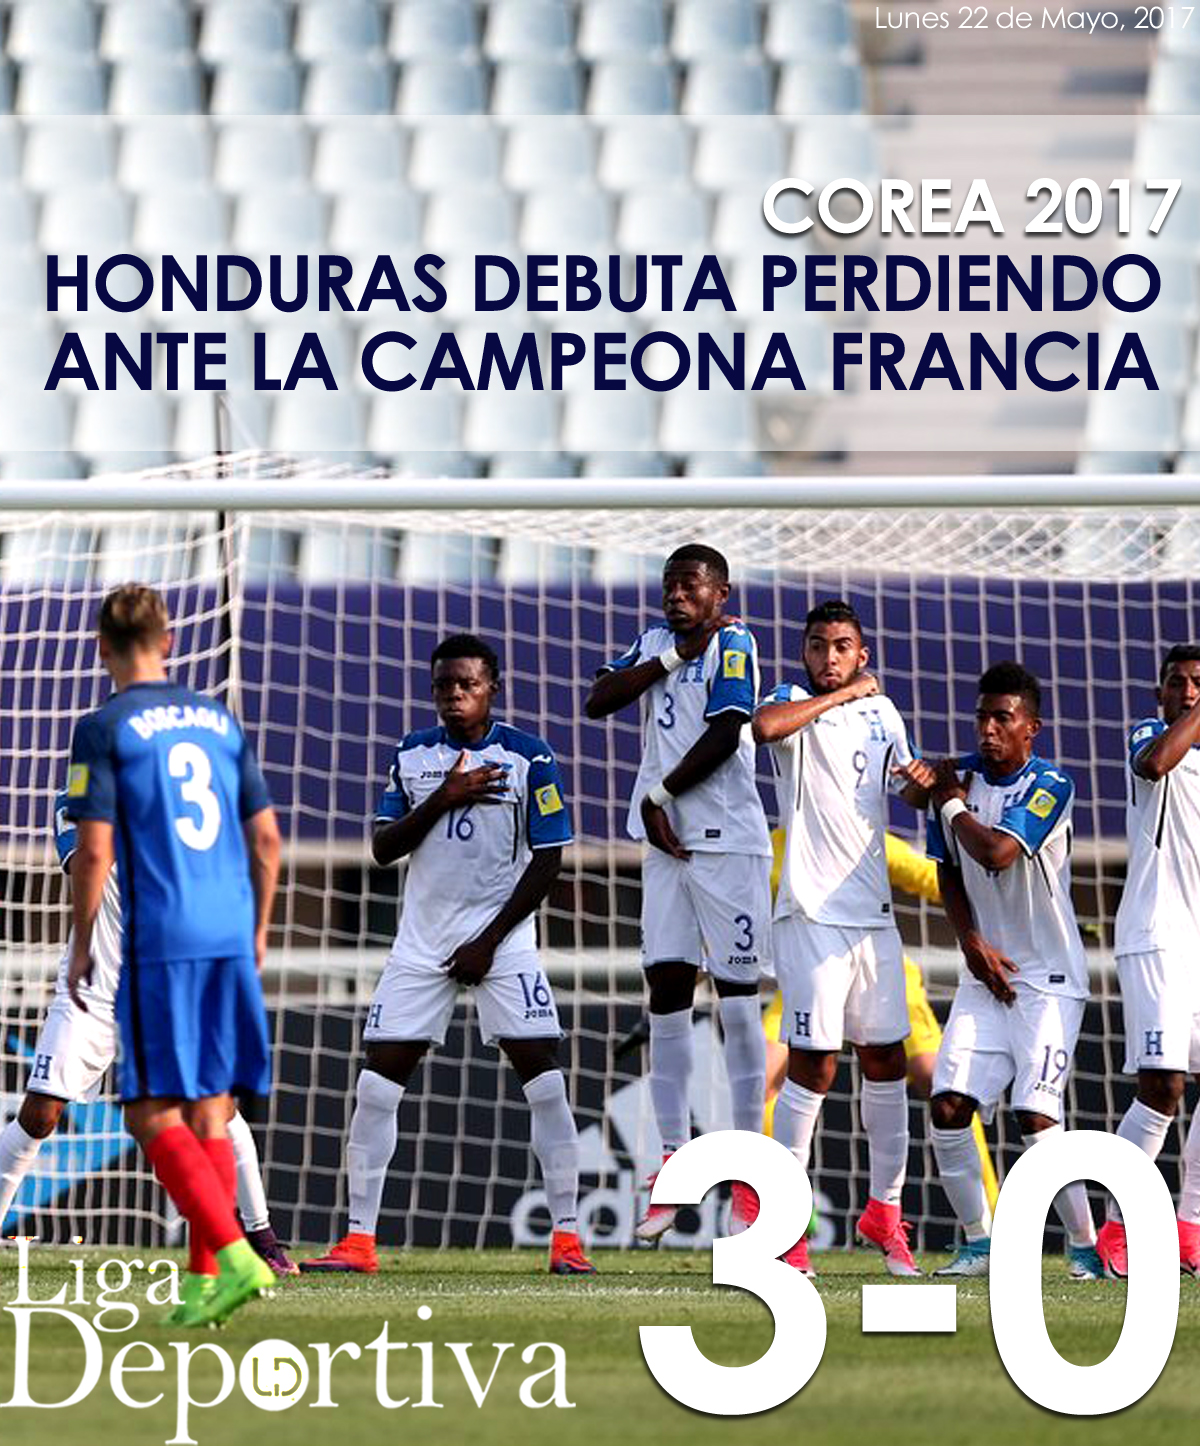 #MundialCorea Honduras debuta perdiendo ante la campeona Francia 